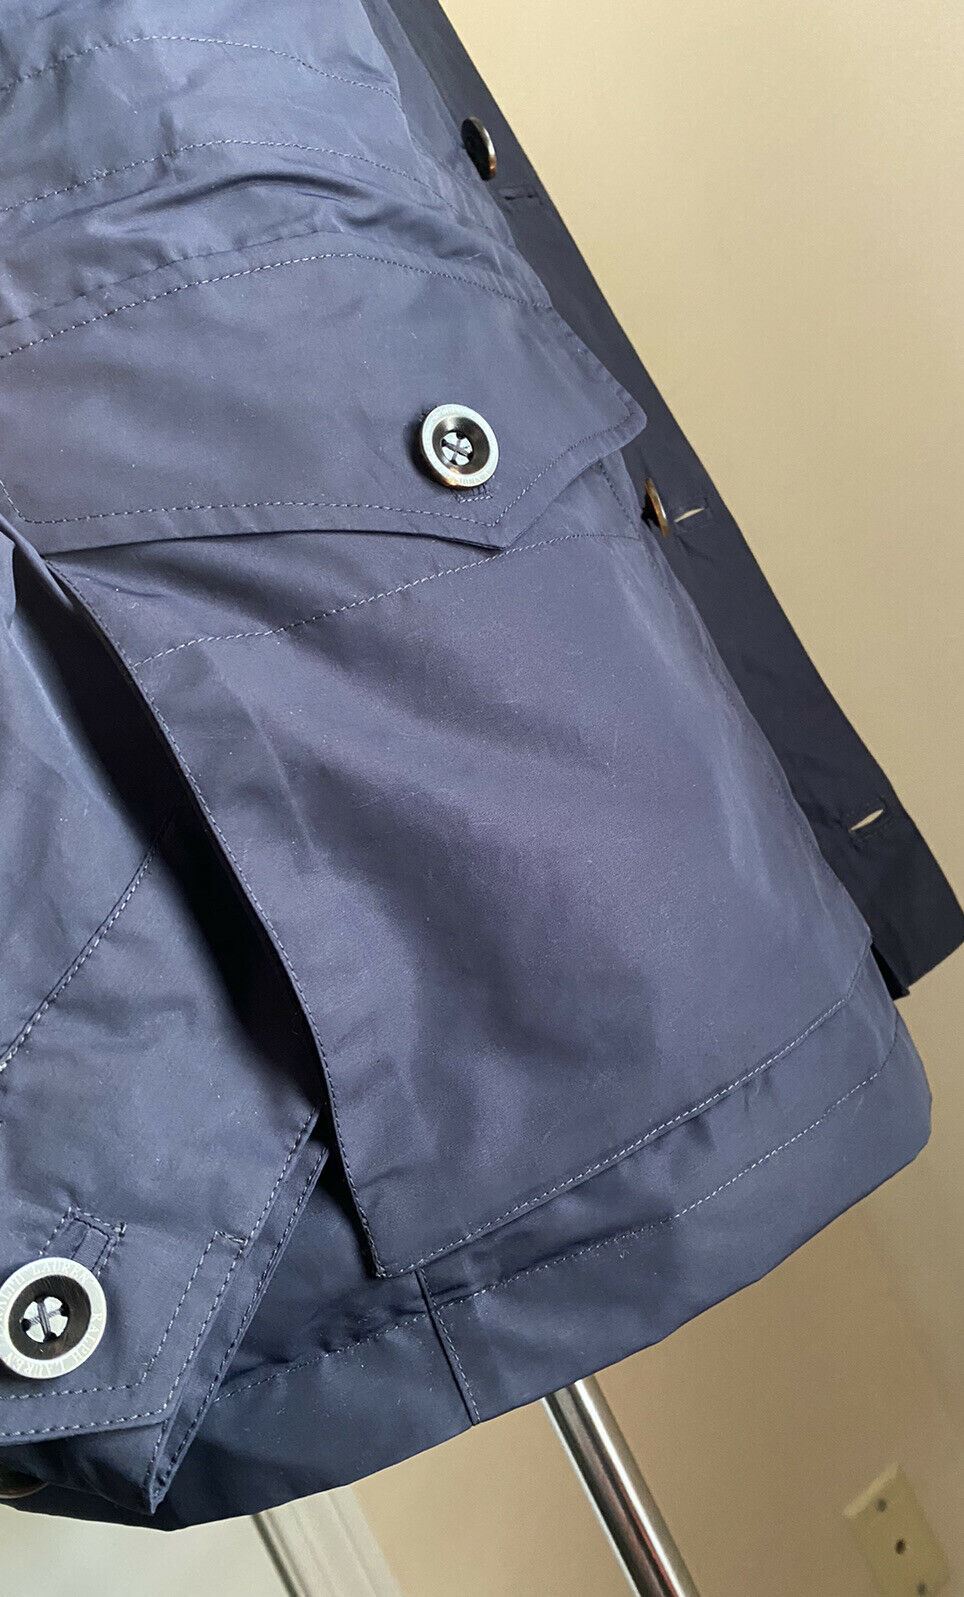 New$1895 Ralph Lauren Purple Label  Laurence Hooded Field Jacket Coat Navy XL